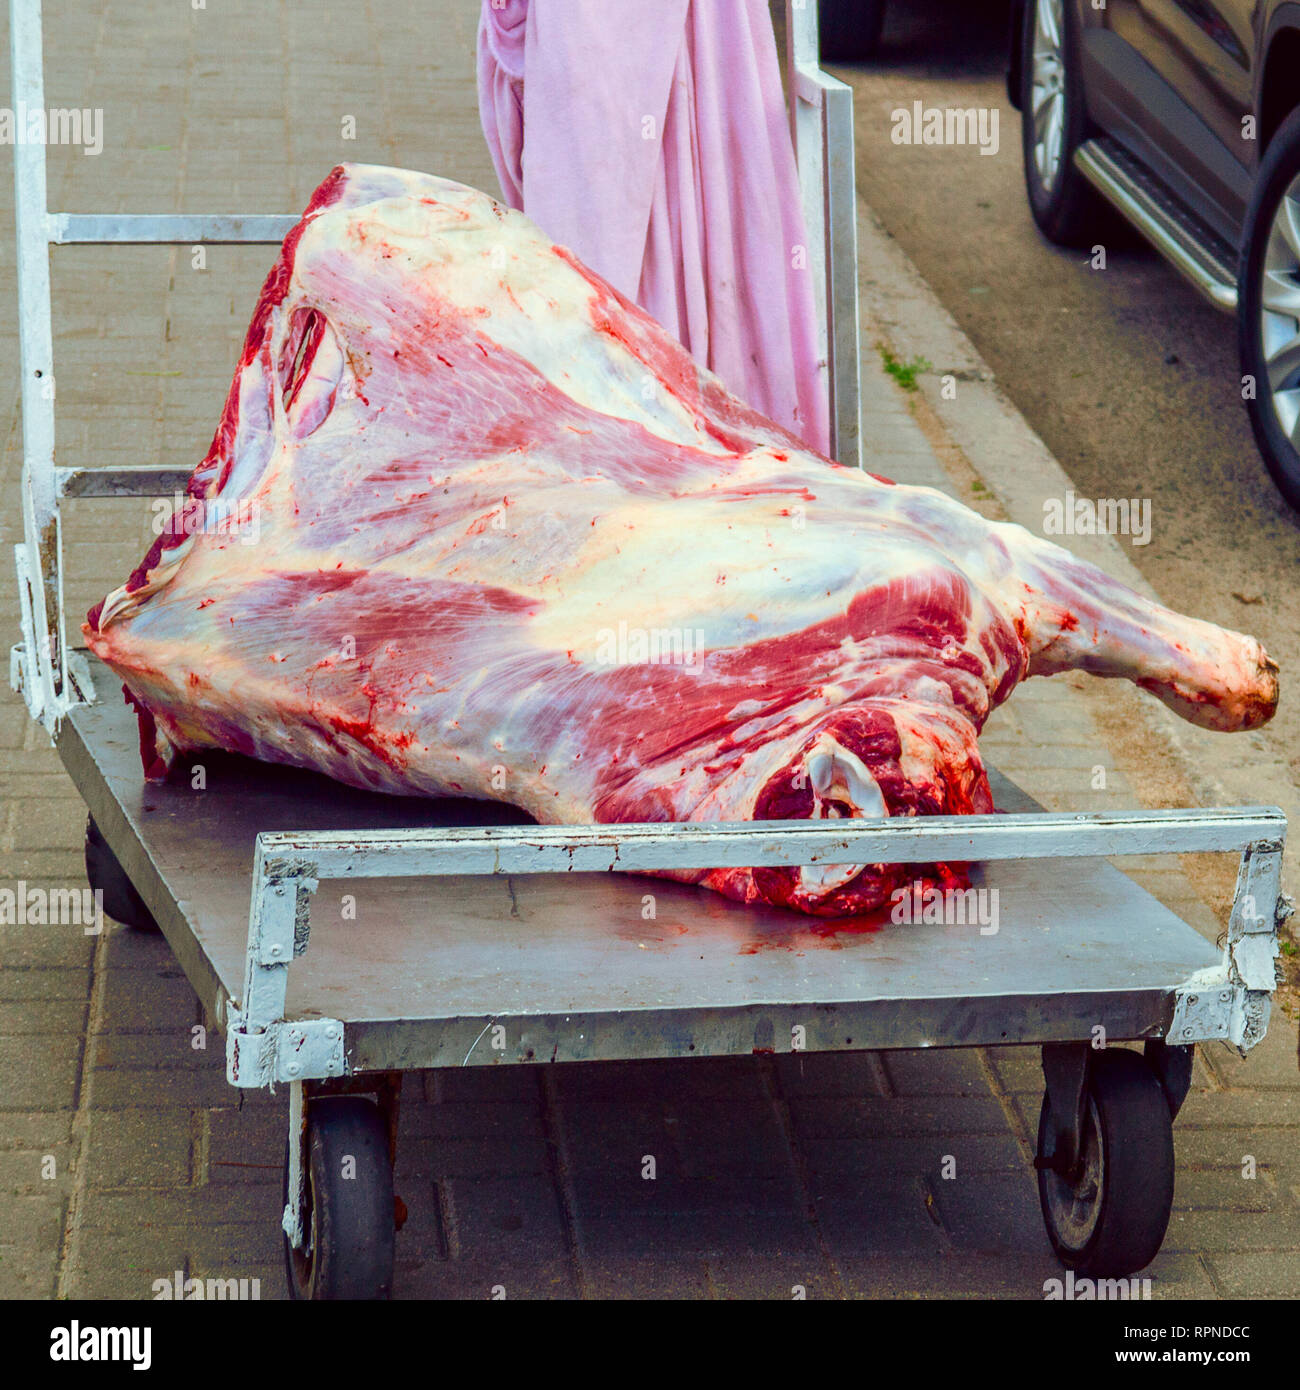 Grande, carcassa fresca di carne si trova su un carrello su strada Foto Stock